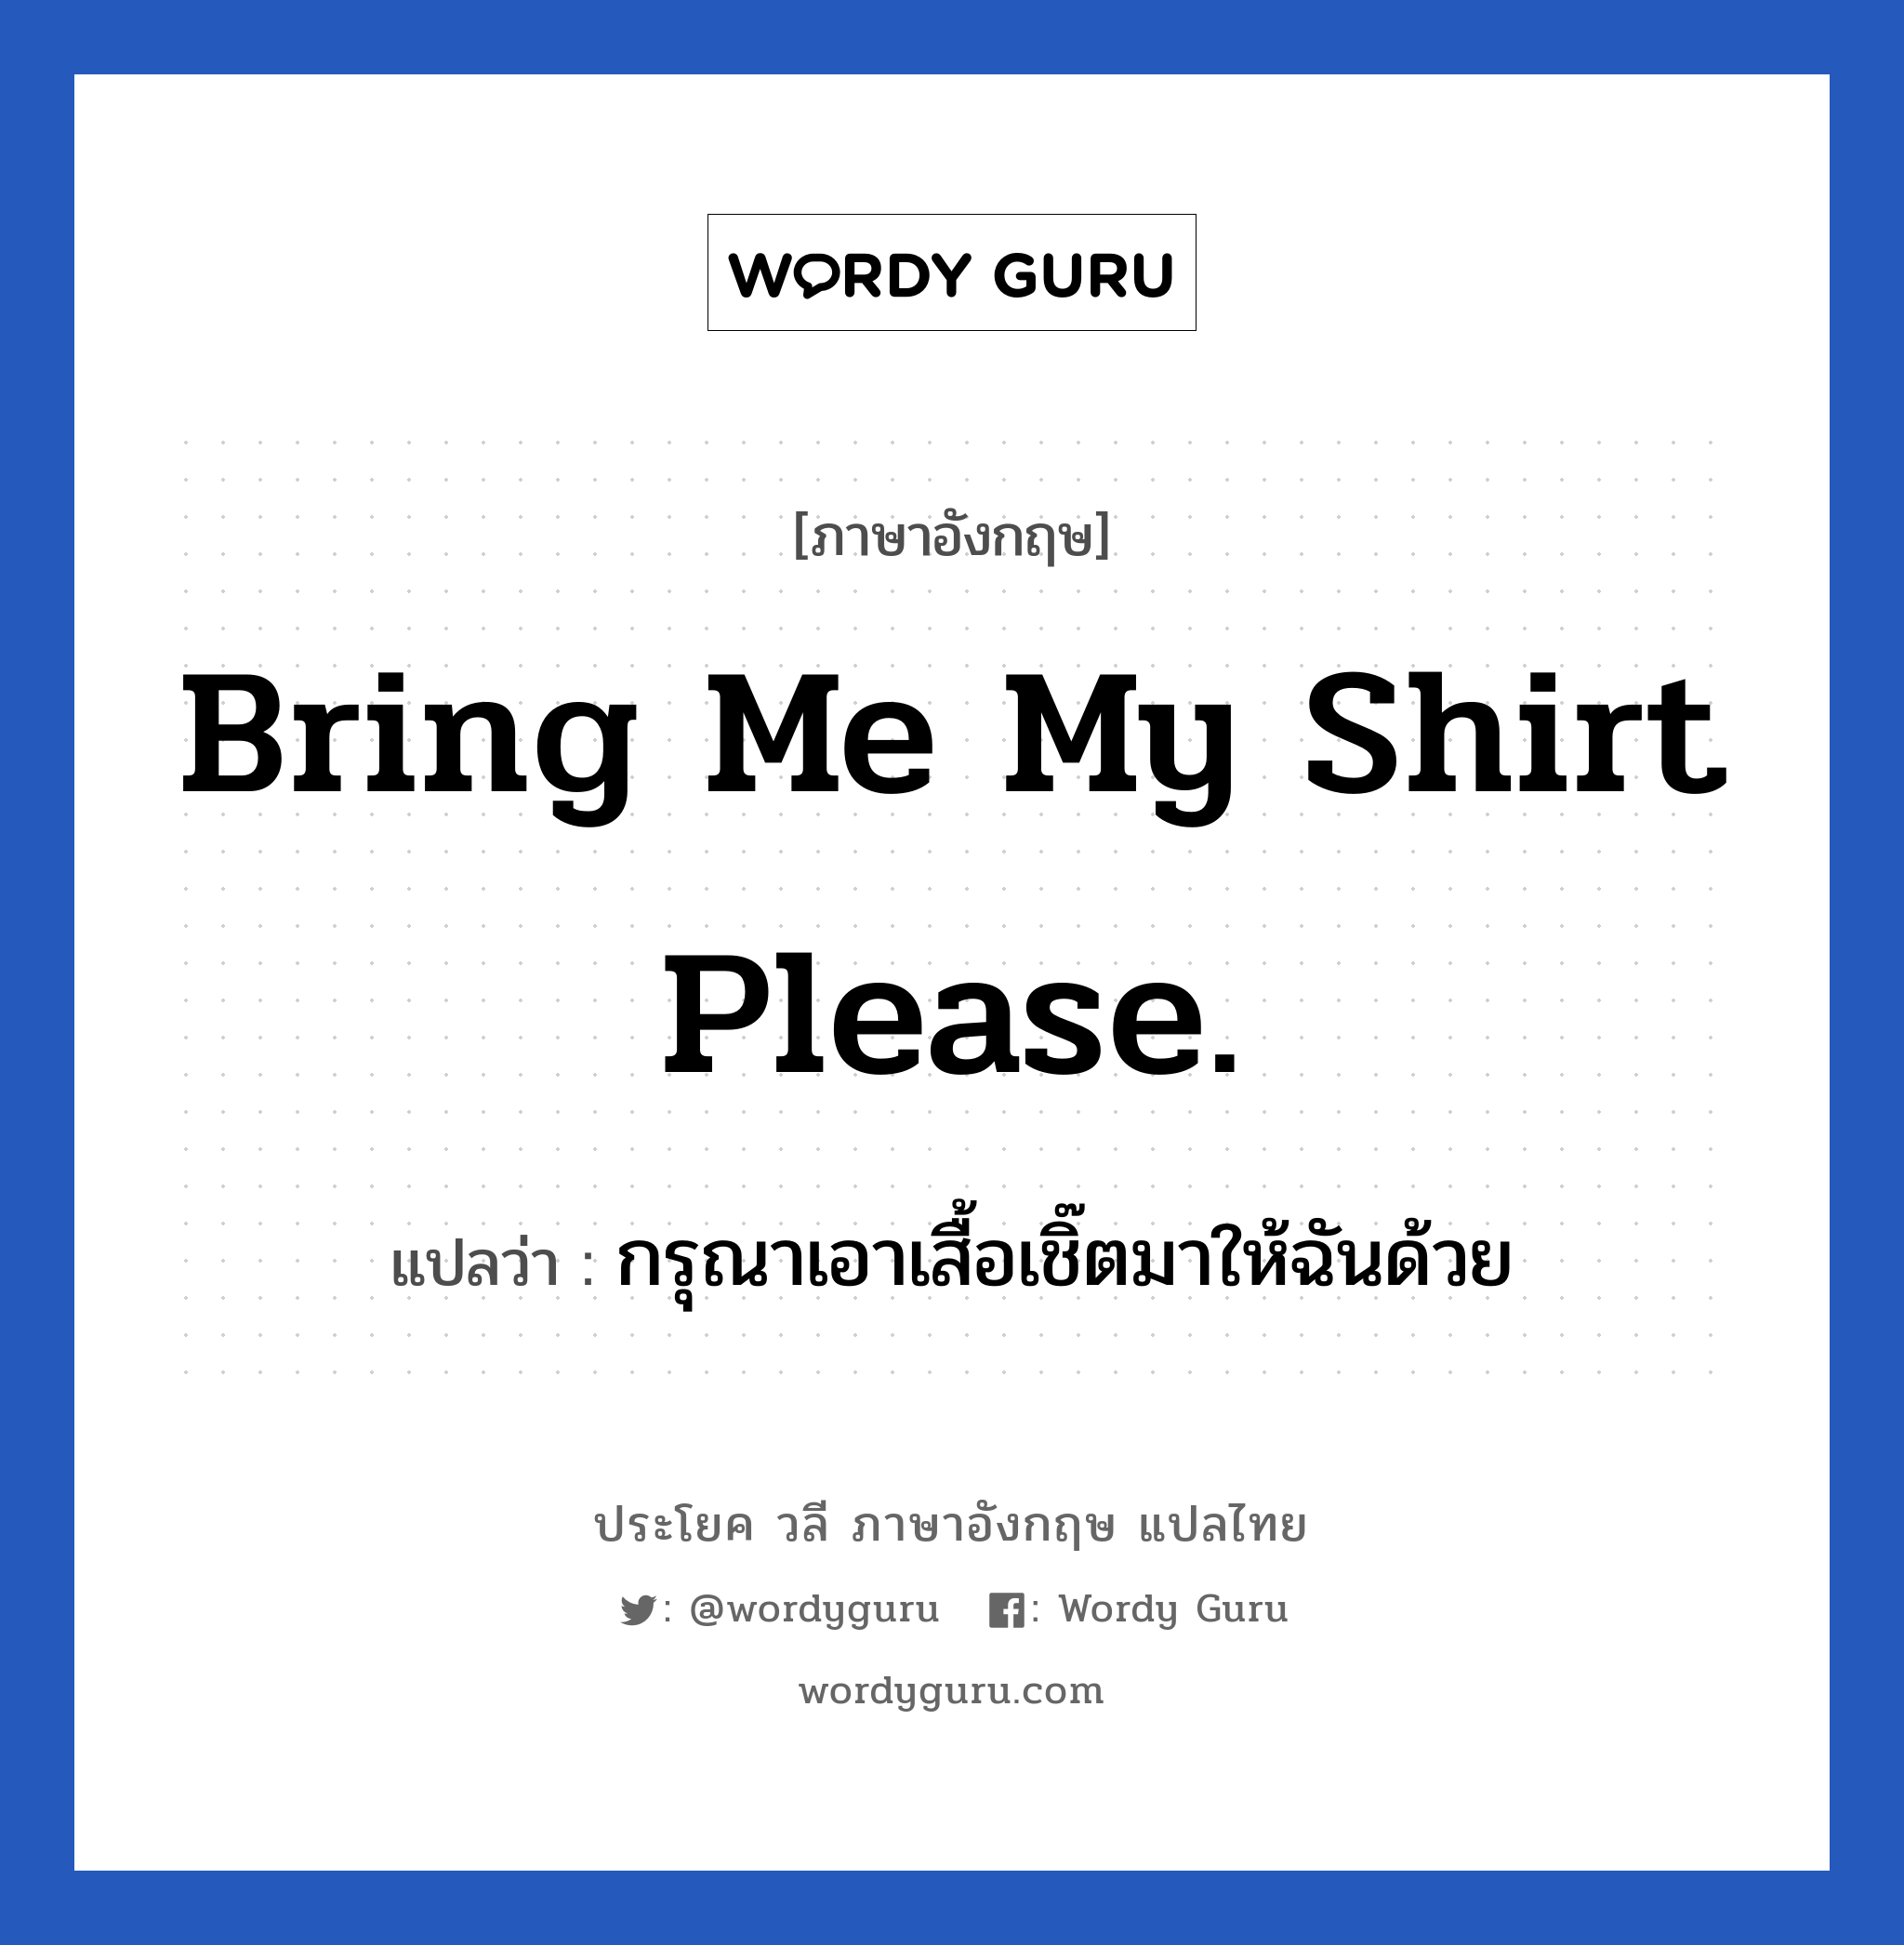 กรุณาเอาเสื้อเชิ๊ตมาให้ฉันด้วย ภาษาอังกฤษ?, วลีภาษาอังกฤษ กรุณาเอาเสื้อเชิ๊ตมาให้ฉันด้วย แปลว่า Bring me my shirt please.